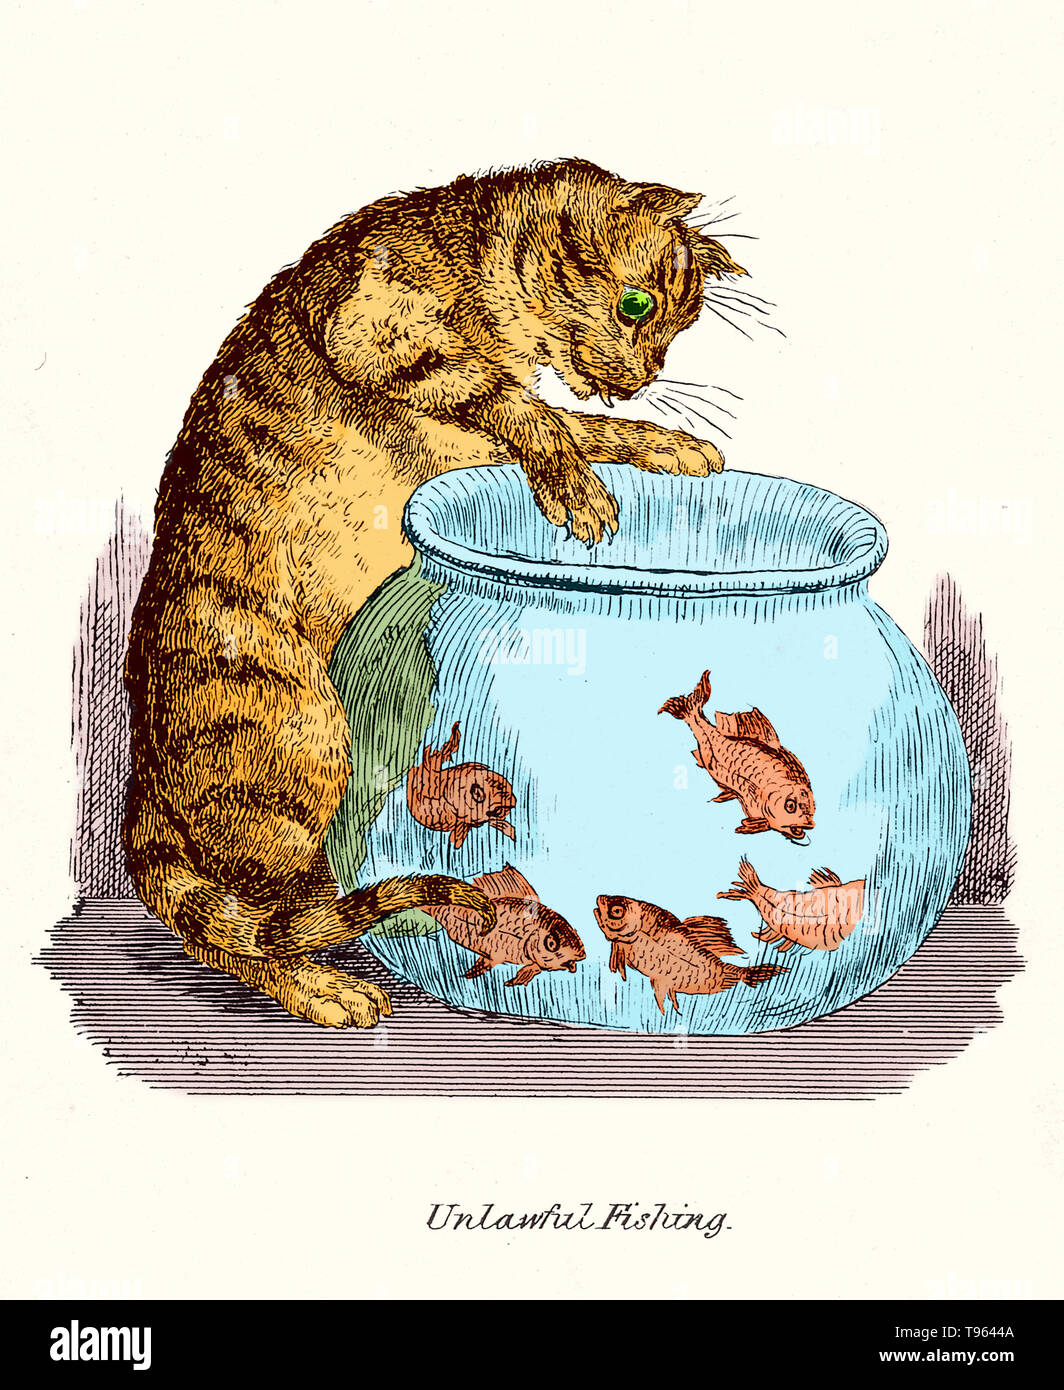 "La pesca illegale': un gatto pawing a goldfish in una ciotola. Riproduzione di una penna e inchiostro disegno da Robert Seymour. Questa immagine è stata migliorata a colori. Foto Stock